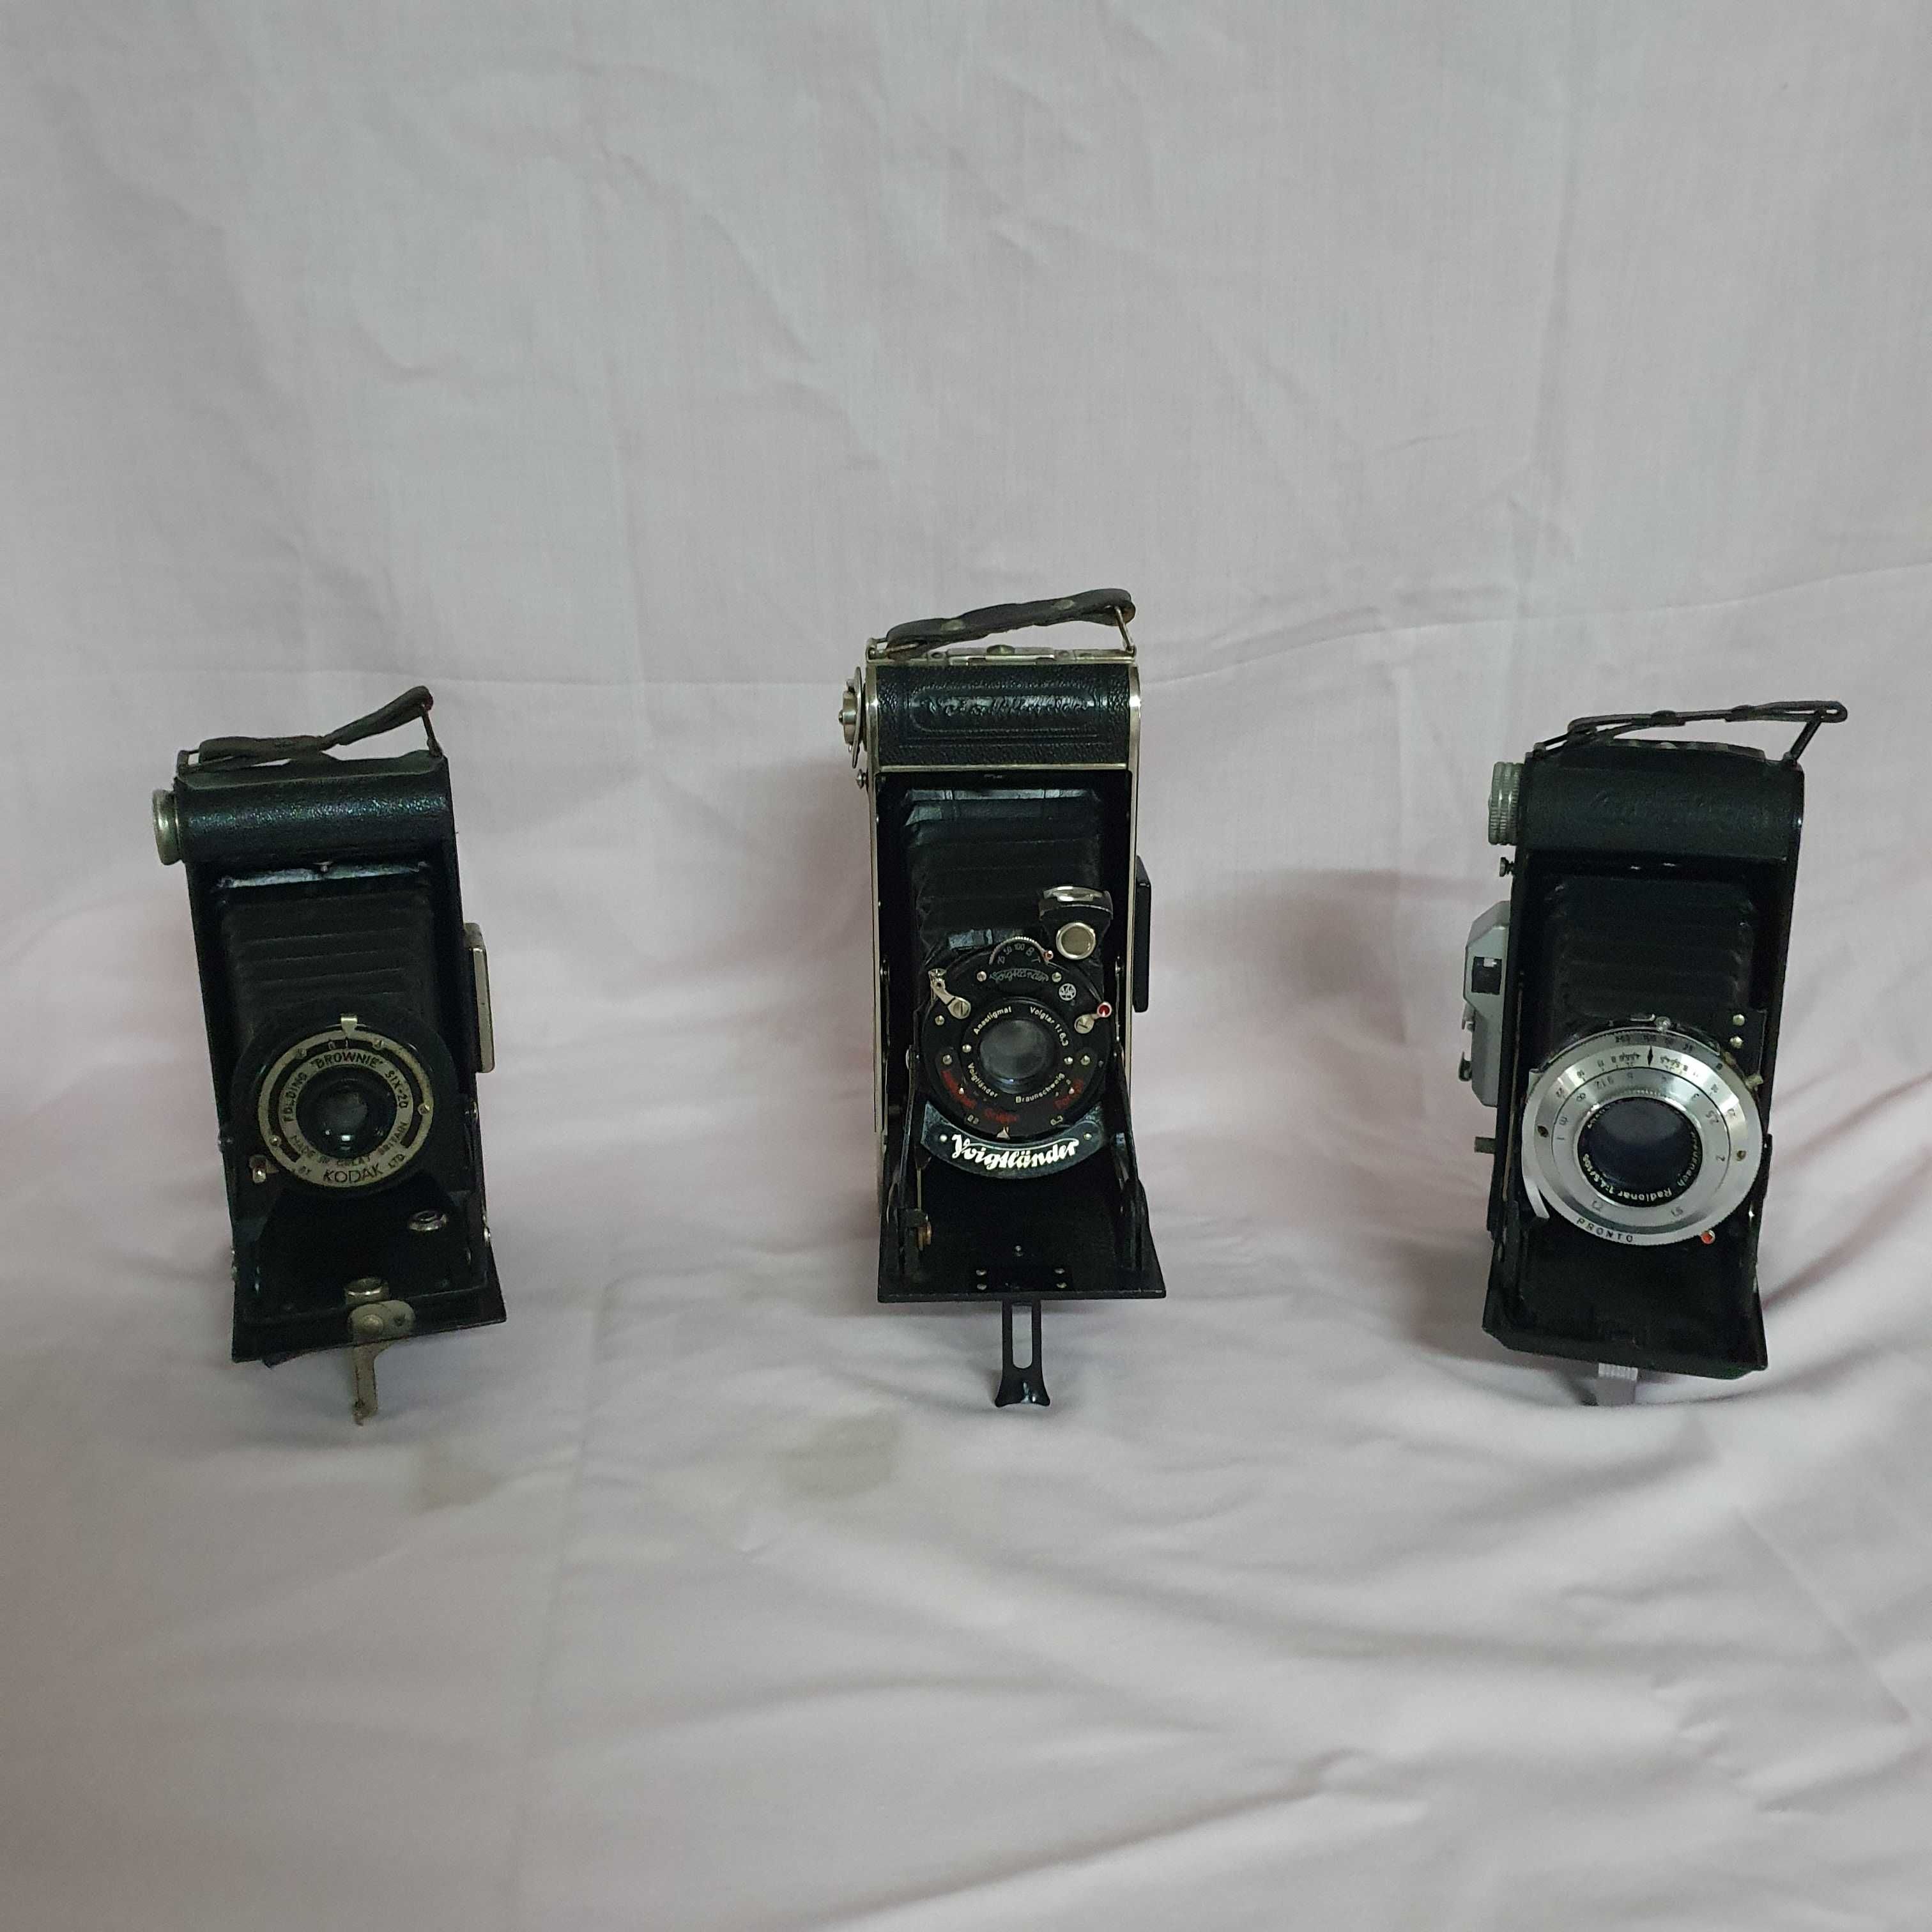 Máquinas fotográficas de colecção, antigas,usadas, analógicas.